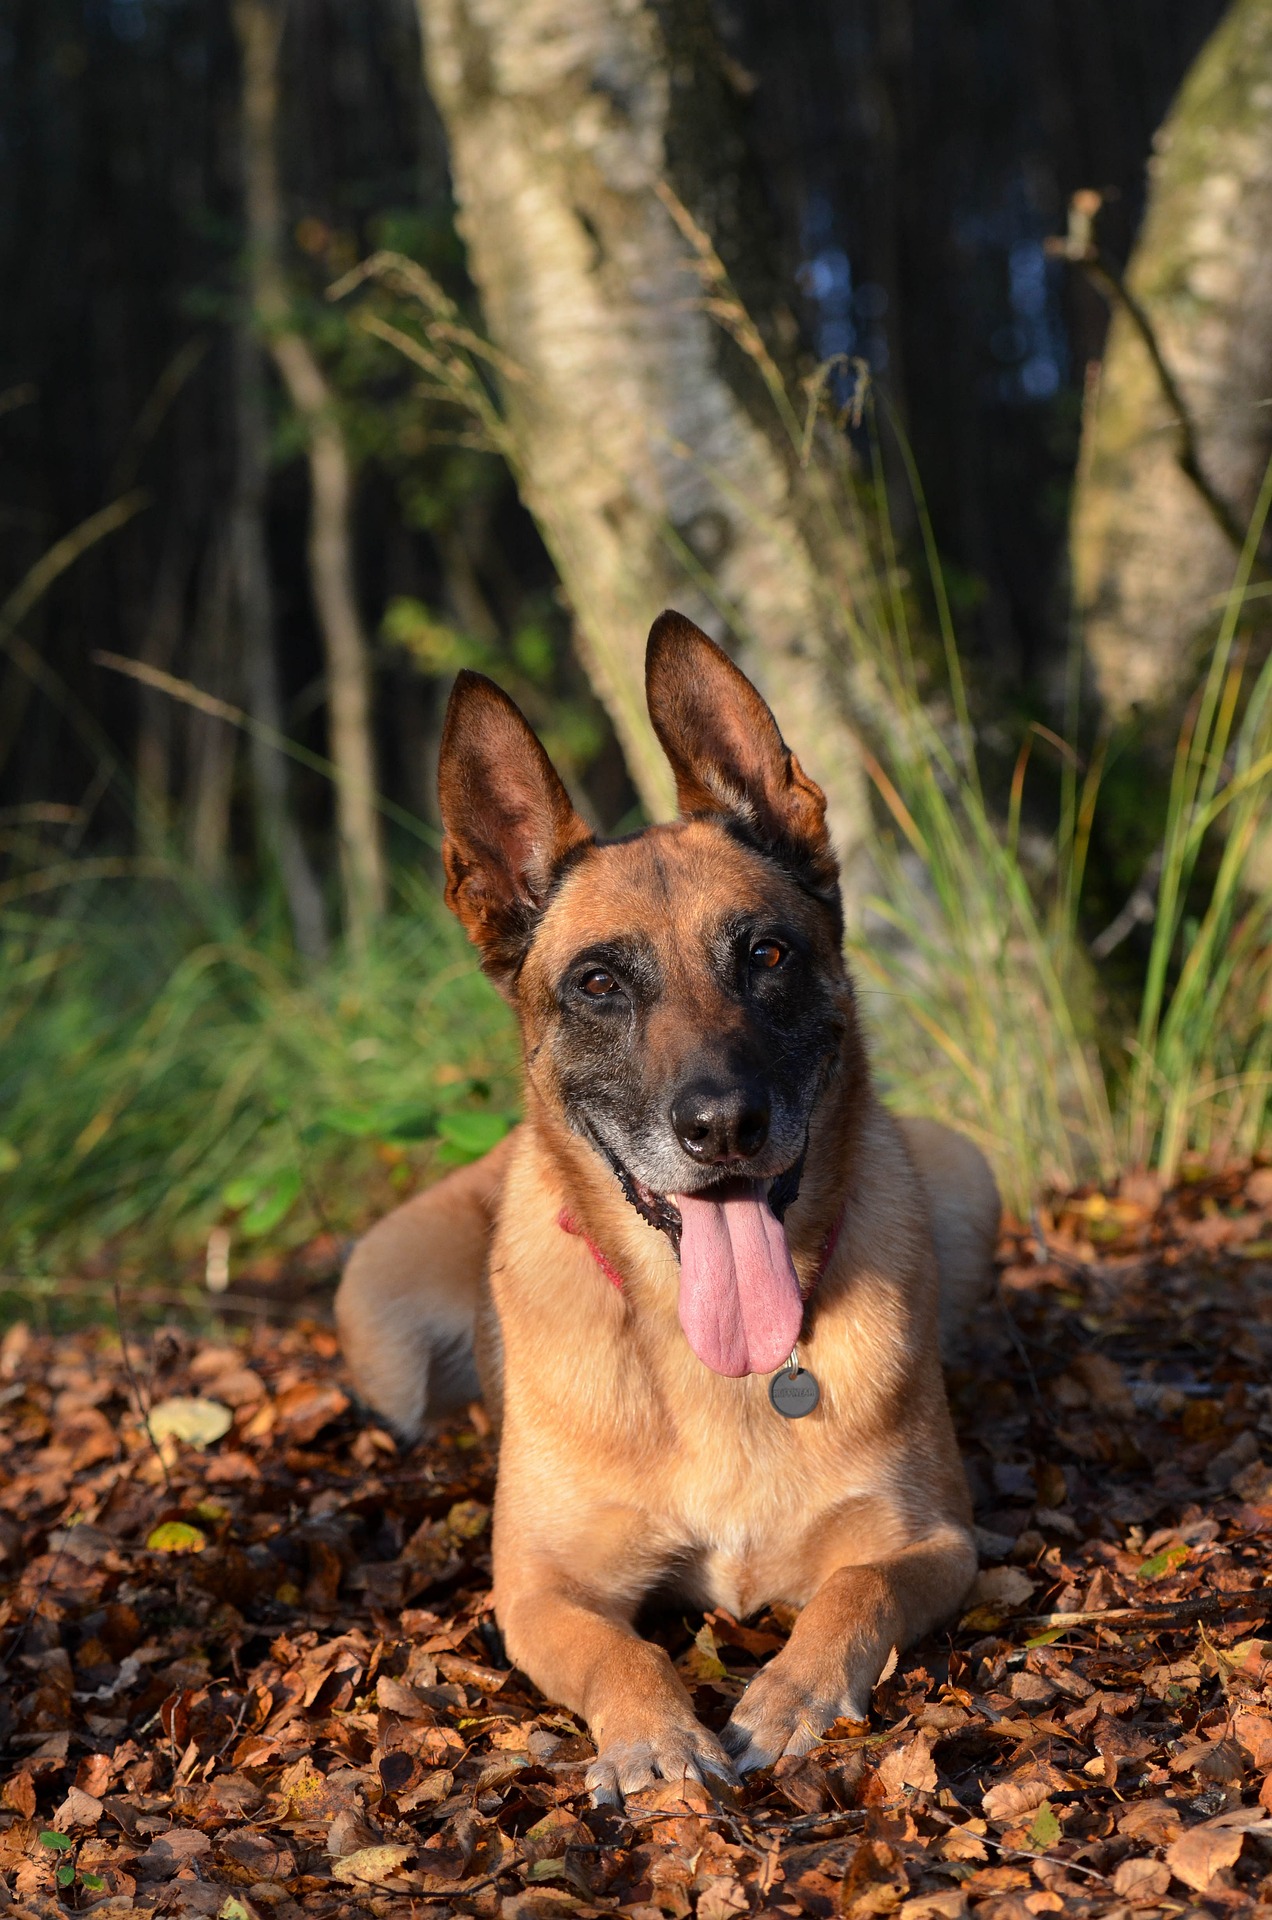 El belga malinois desbanca al border collie como el perro mas inteligente del mundo. Imagen de Katrin B. en Pixabay